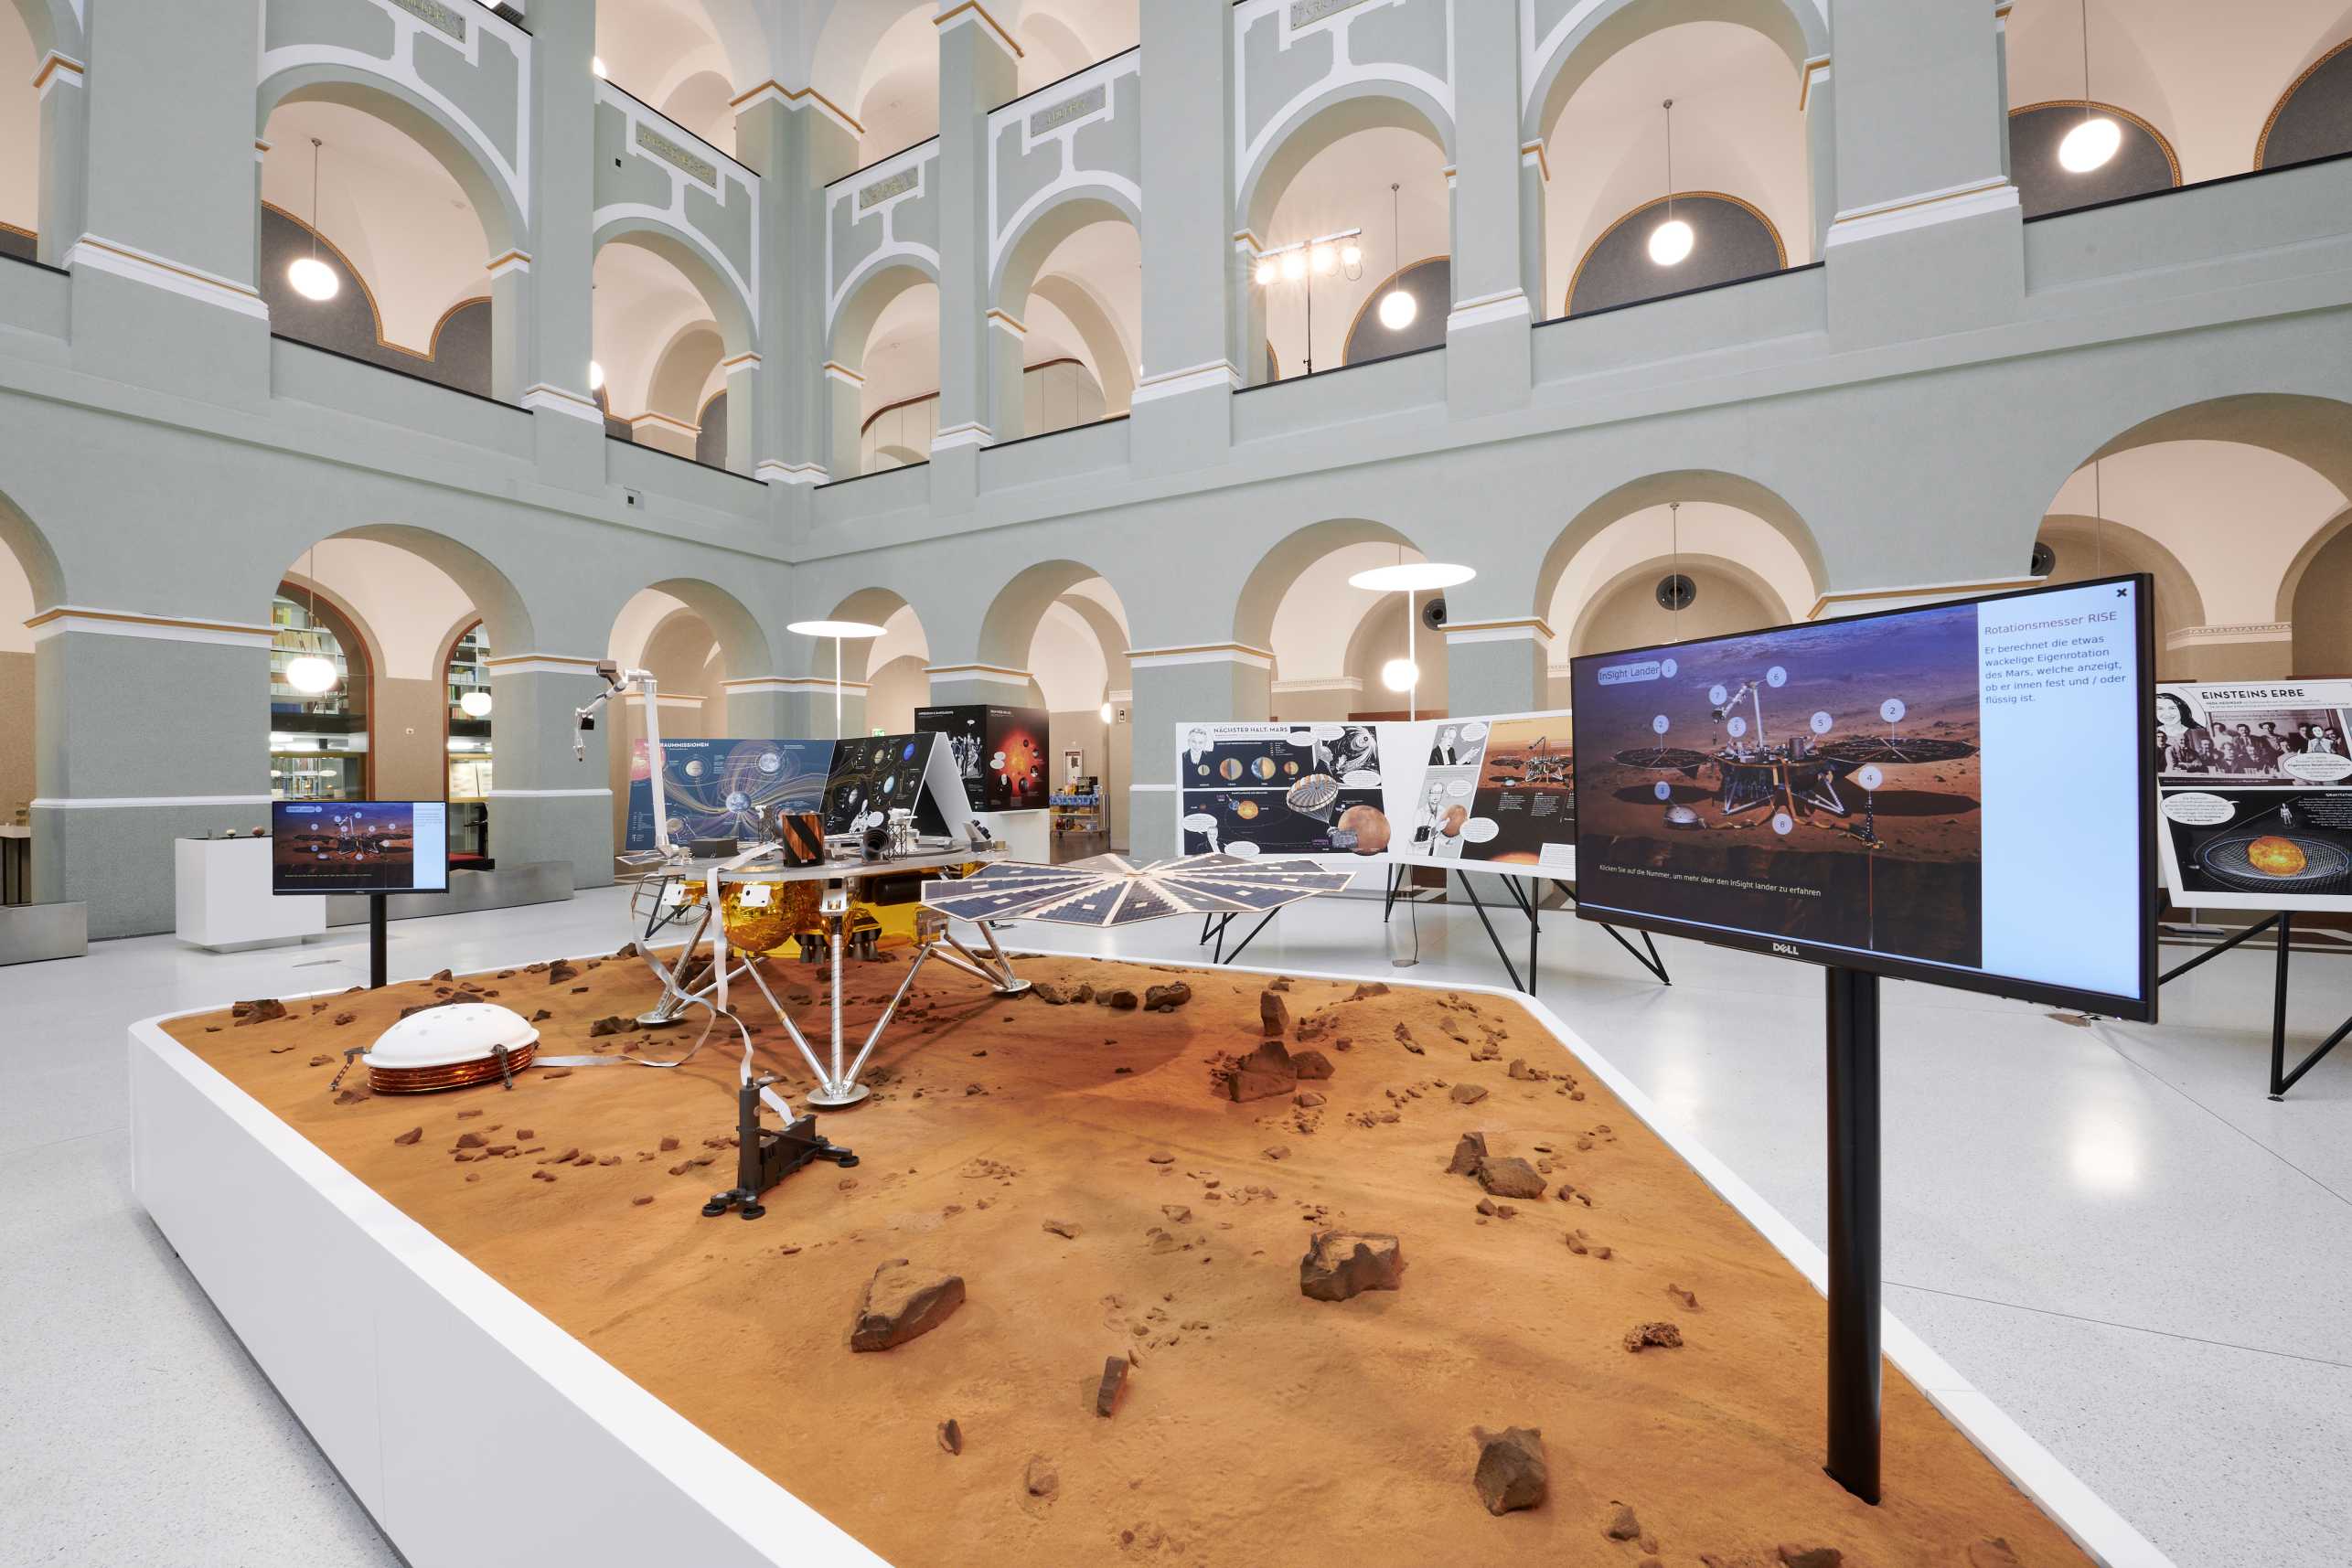 InSight Mars Lander Modell